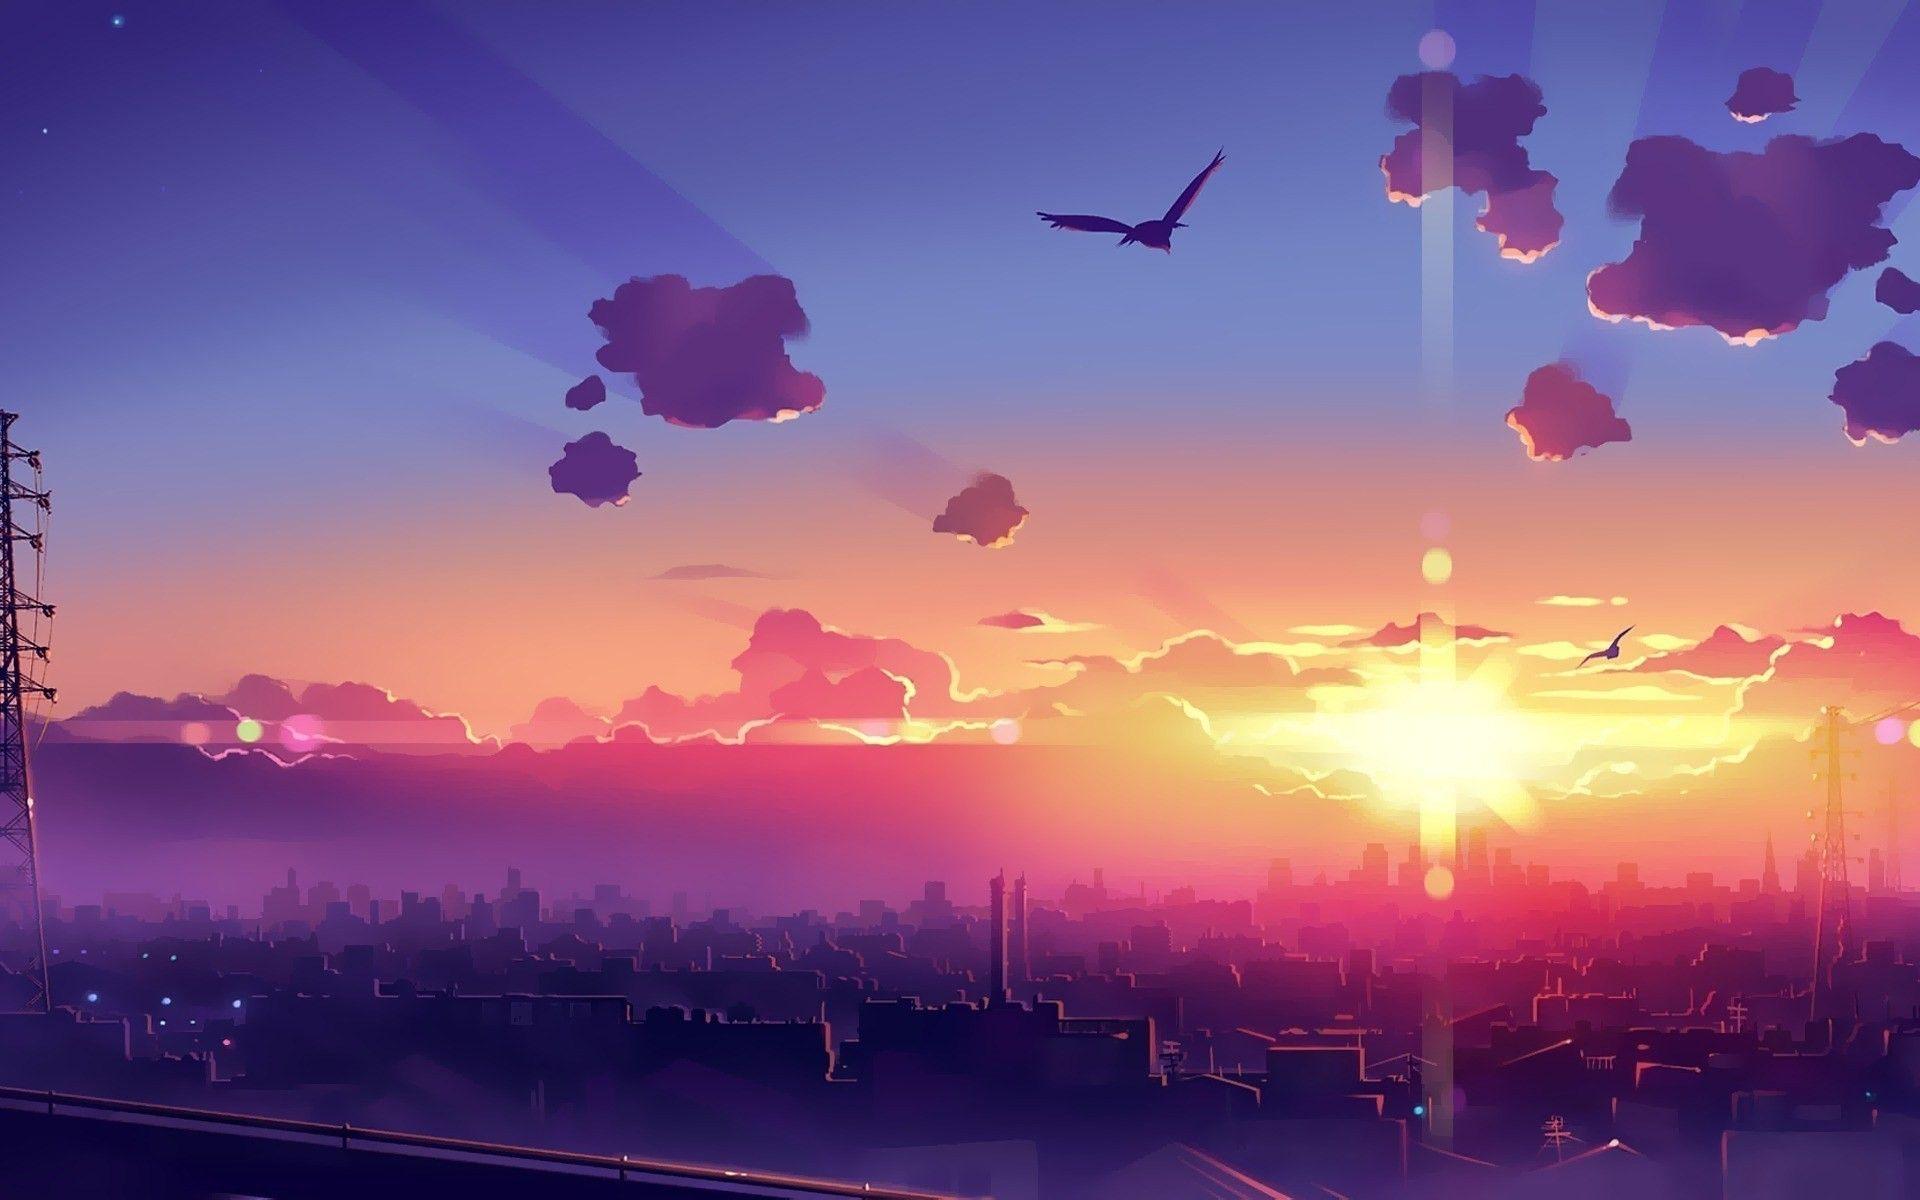 Anime #Wallpaper #Background. Anime scenery wallpaper, Sunrise